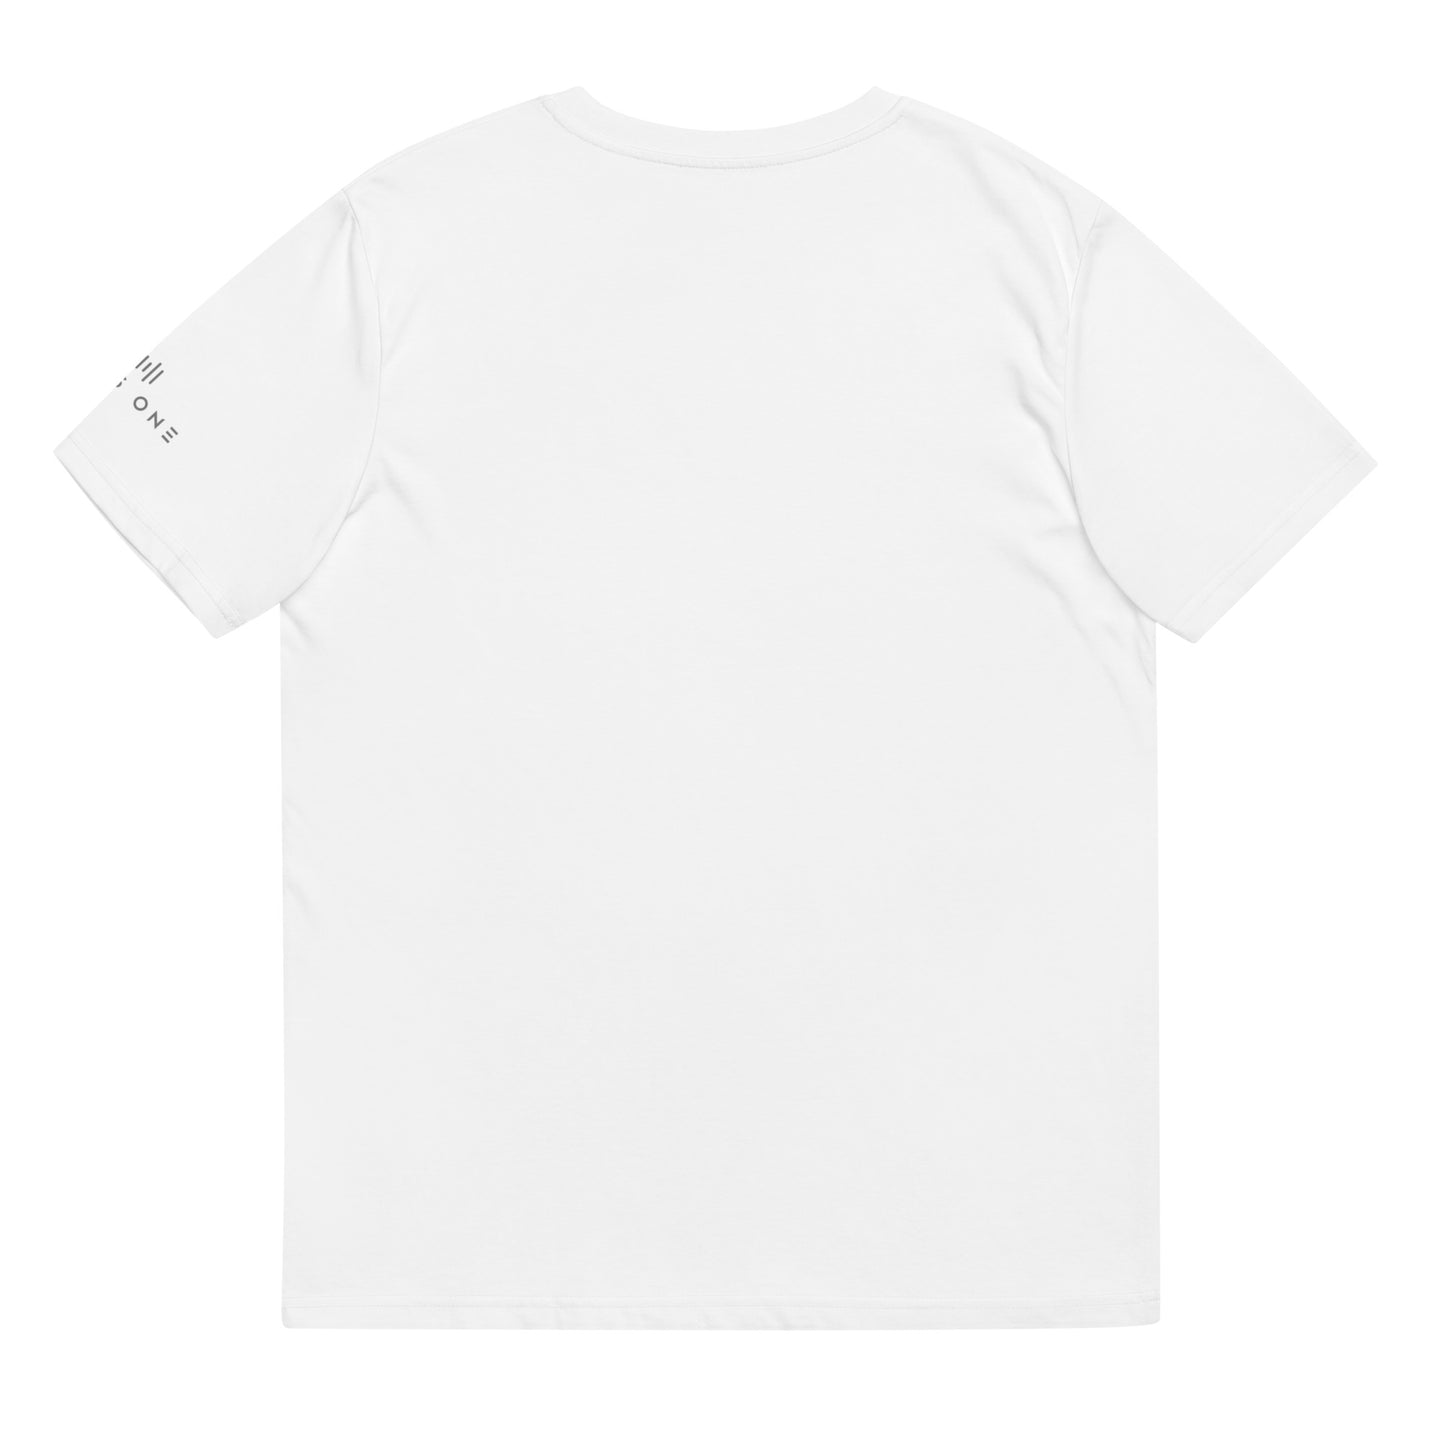 Tribe Mic-e (v5) Unisex organic cotton t-shirt